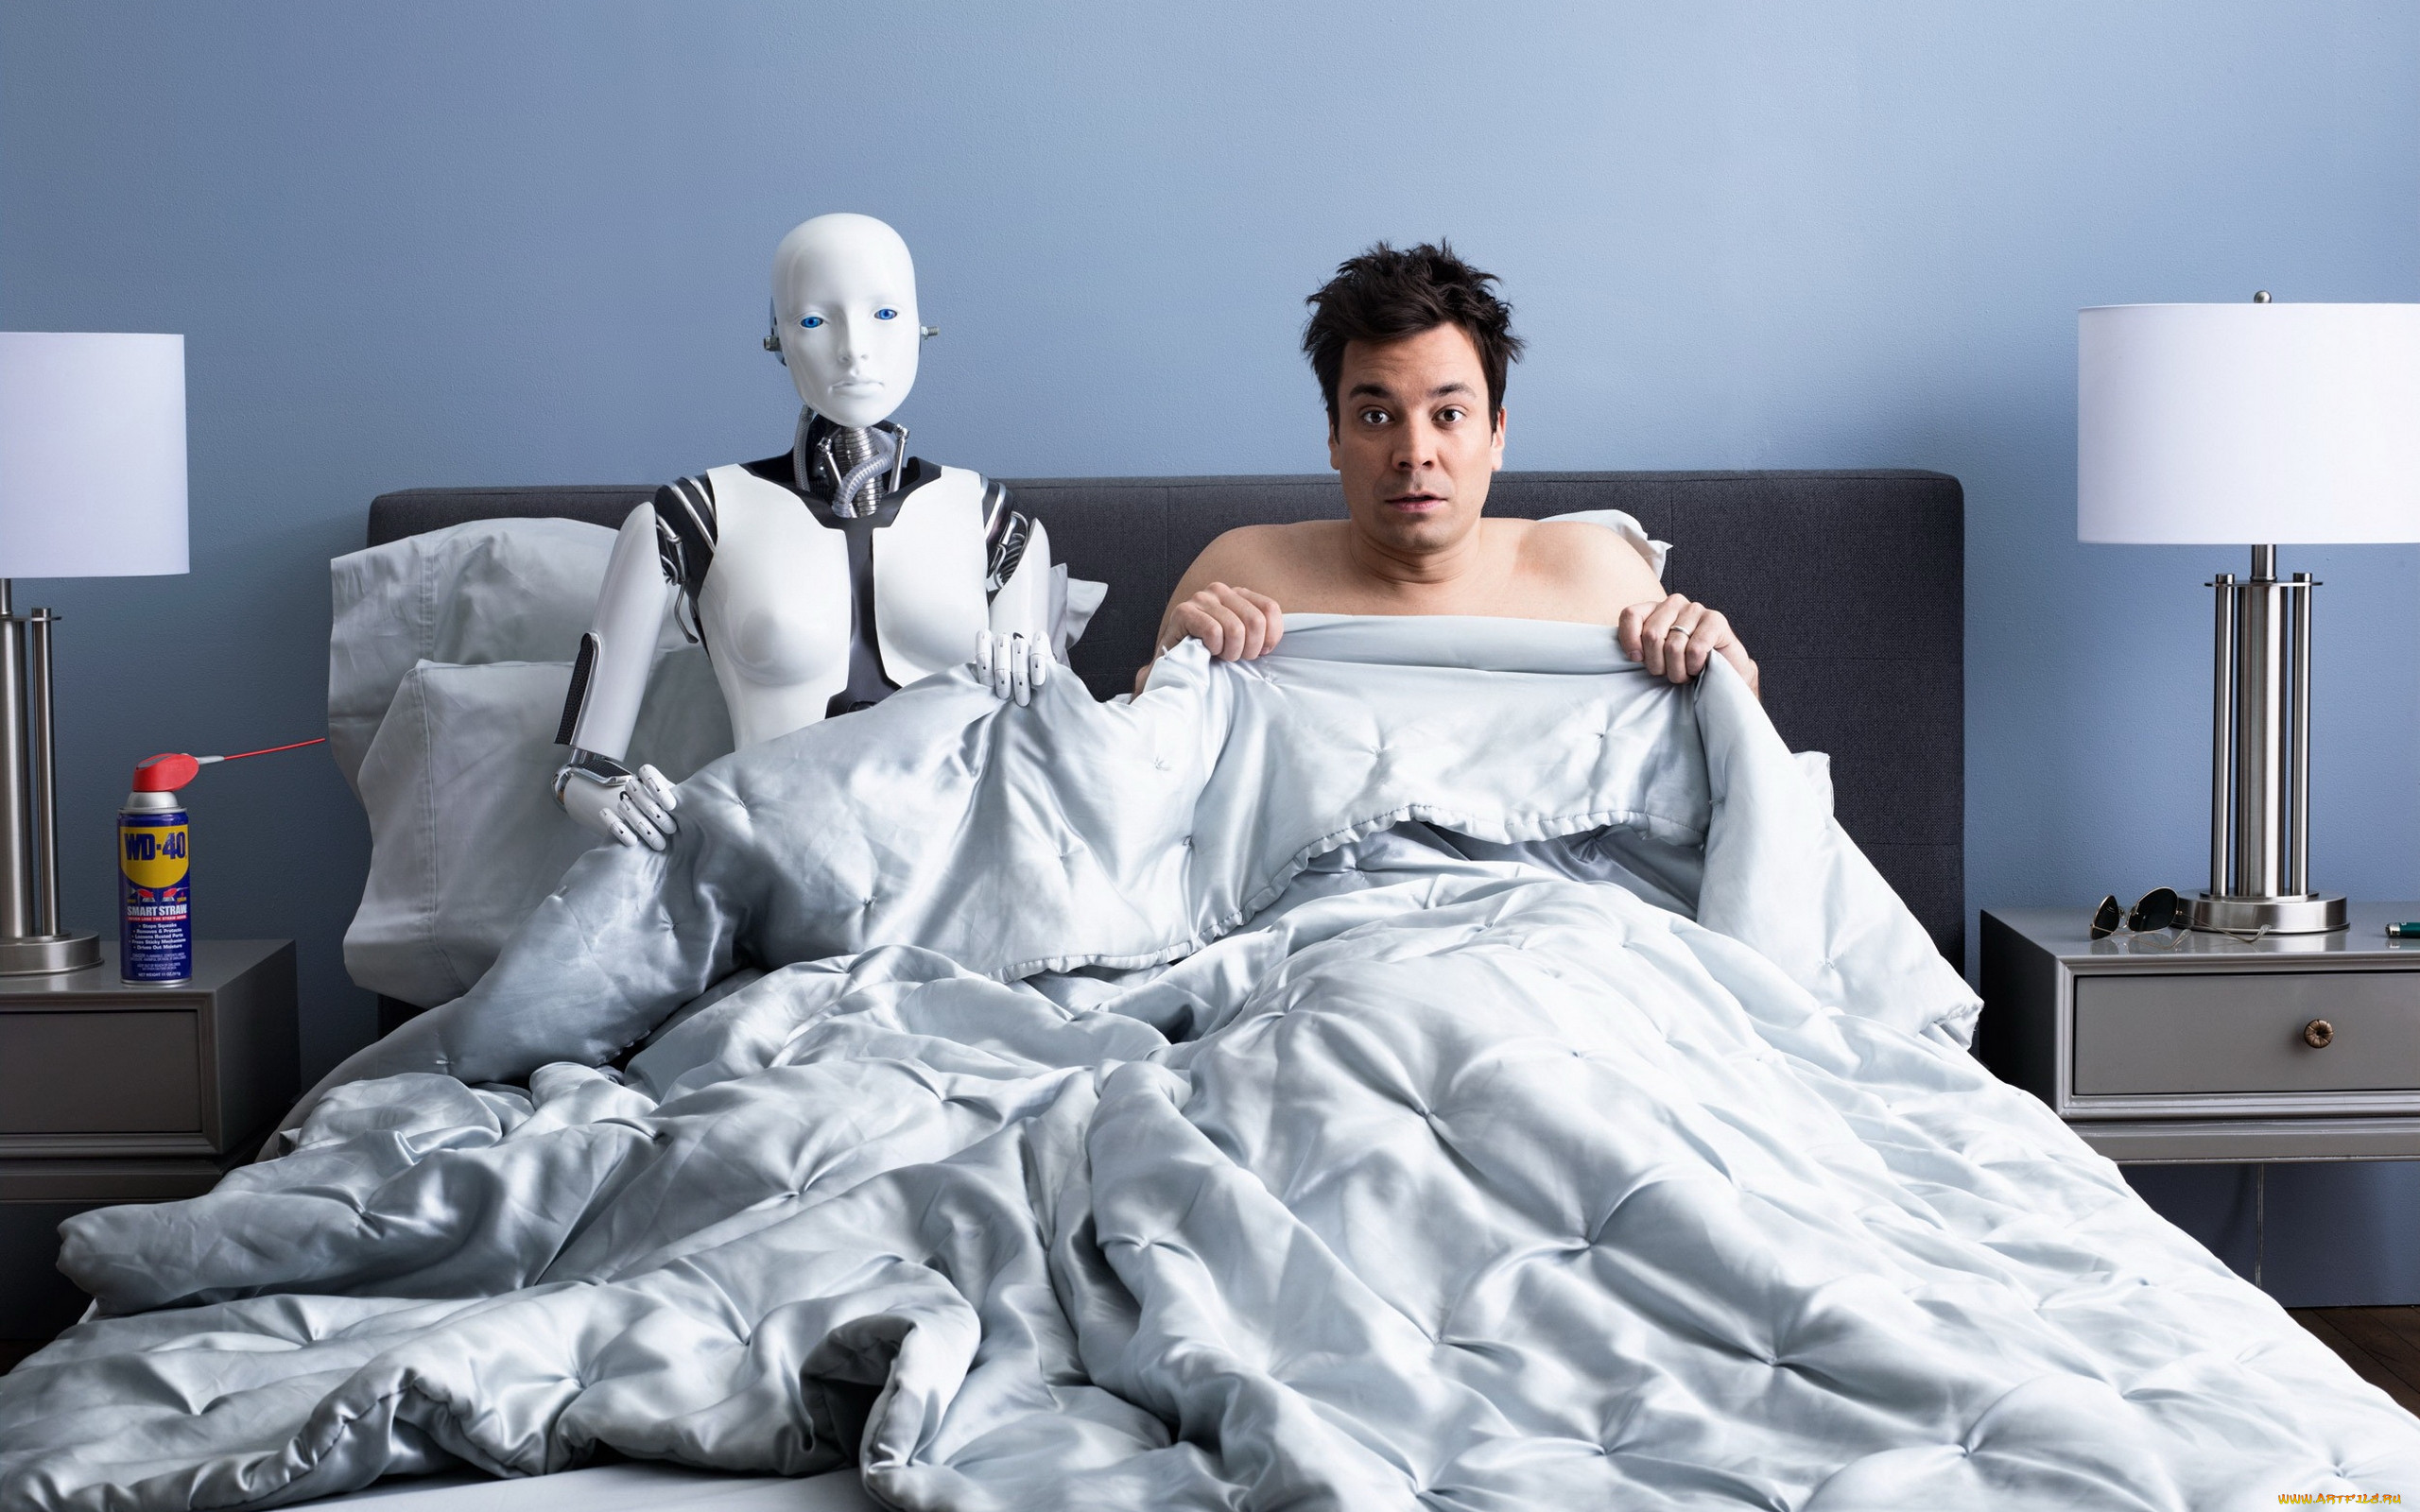 юмор и приколы, кровать, андроид, робот, мужчина